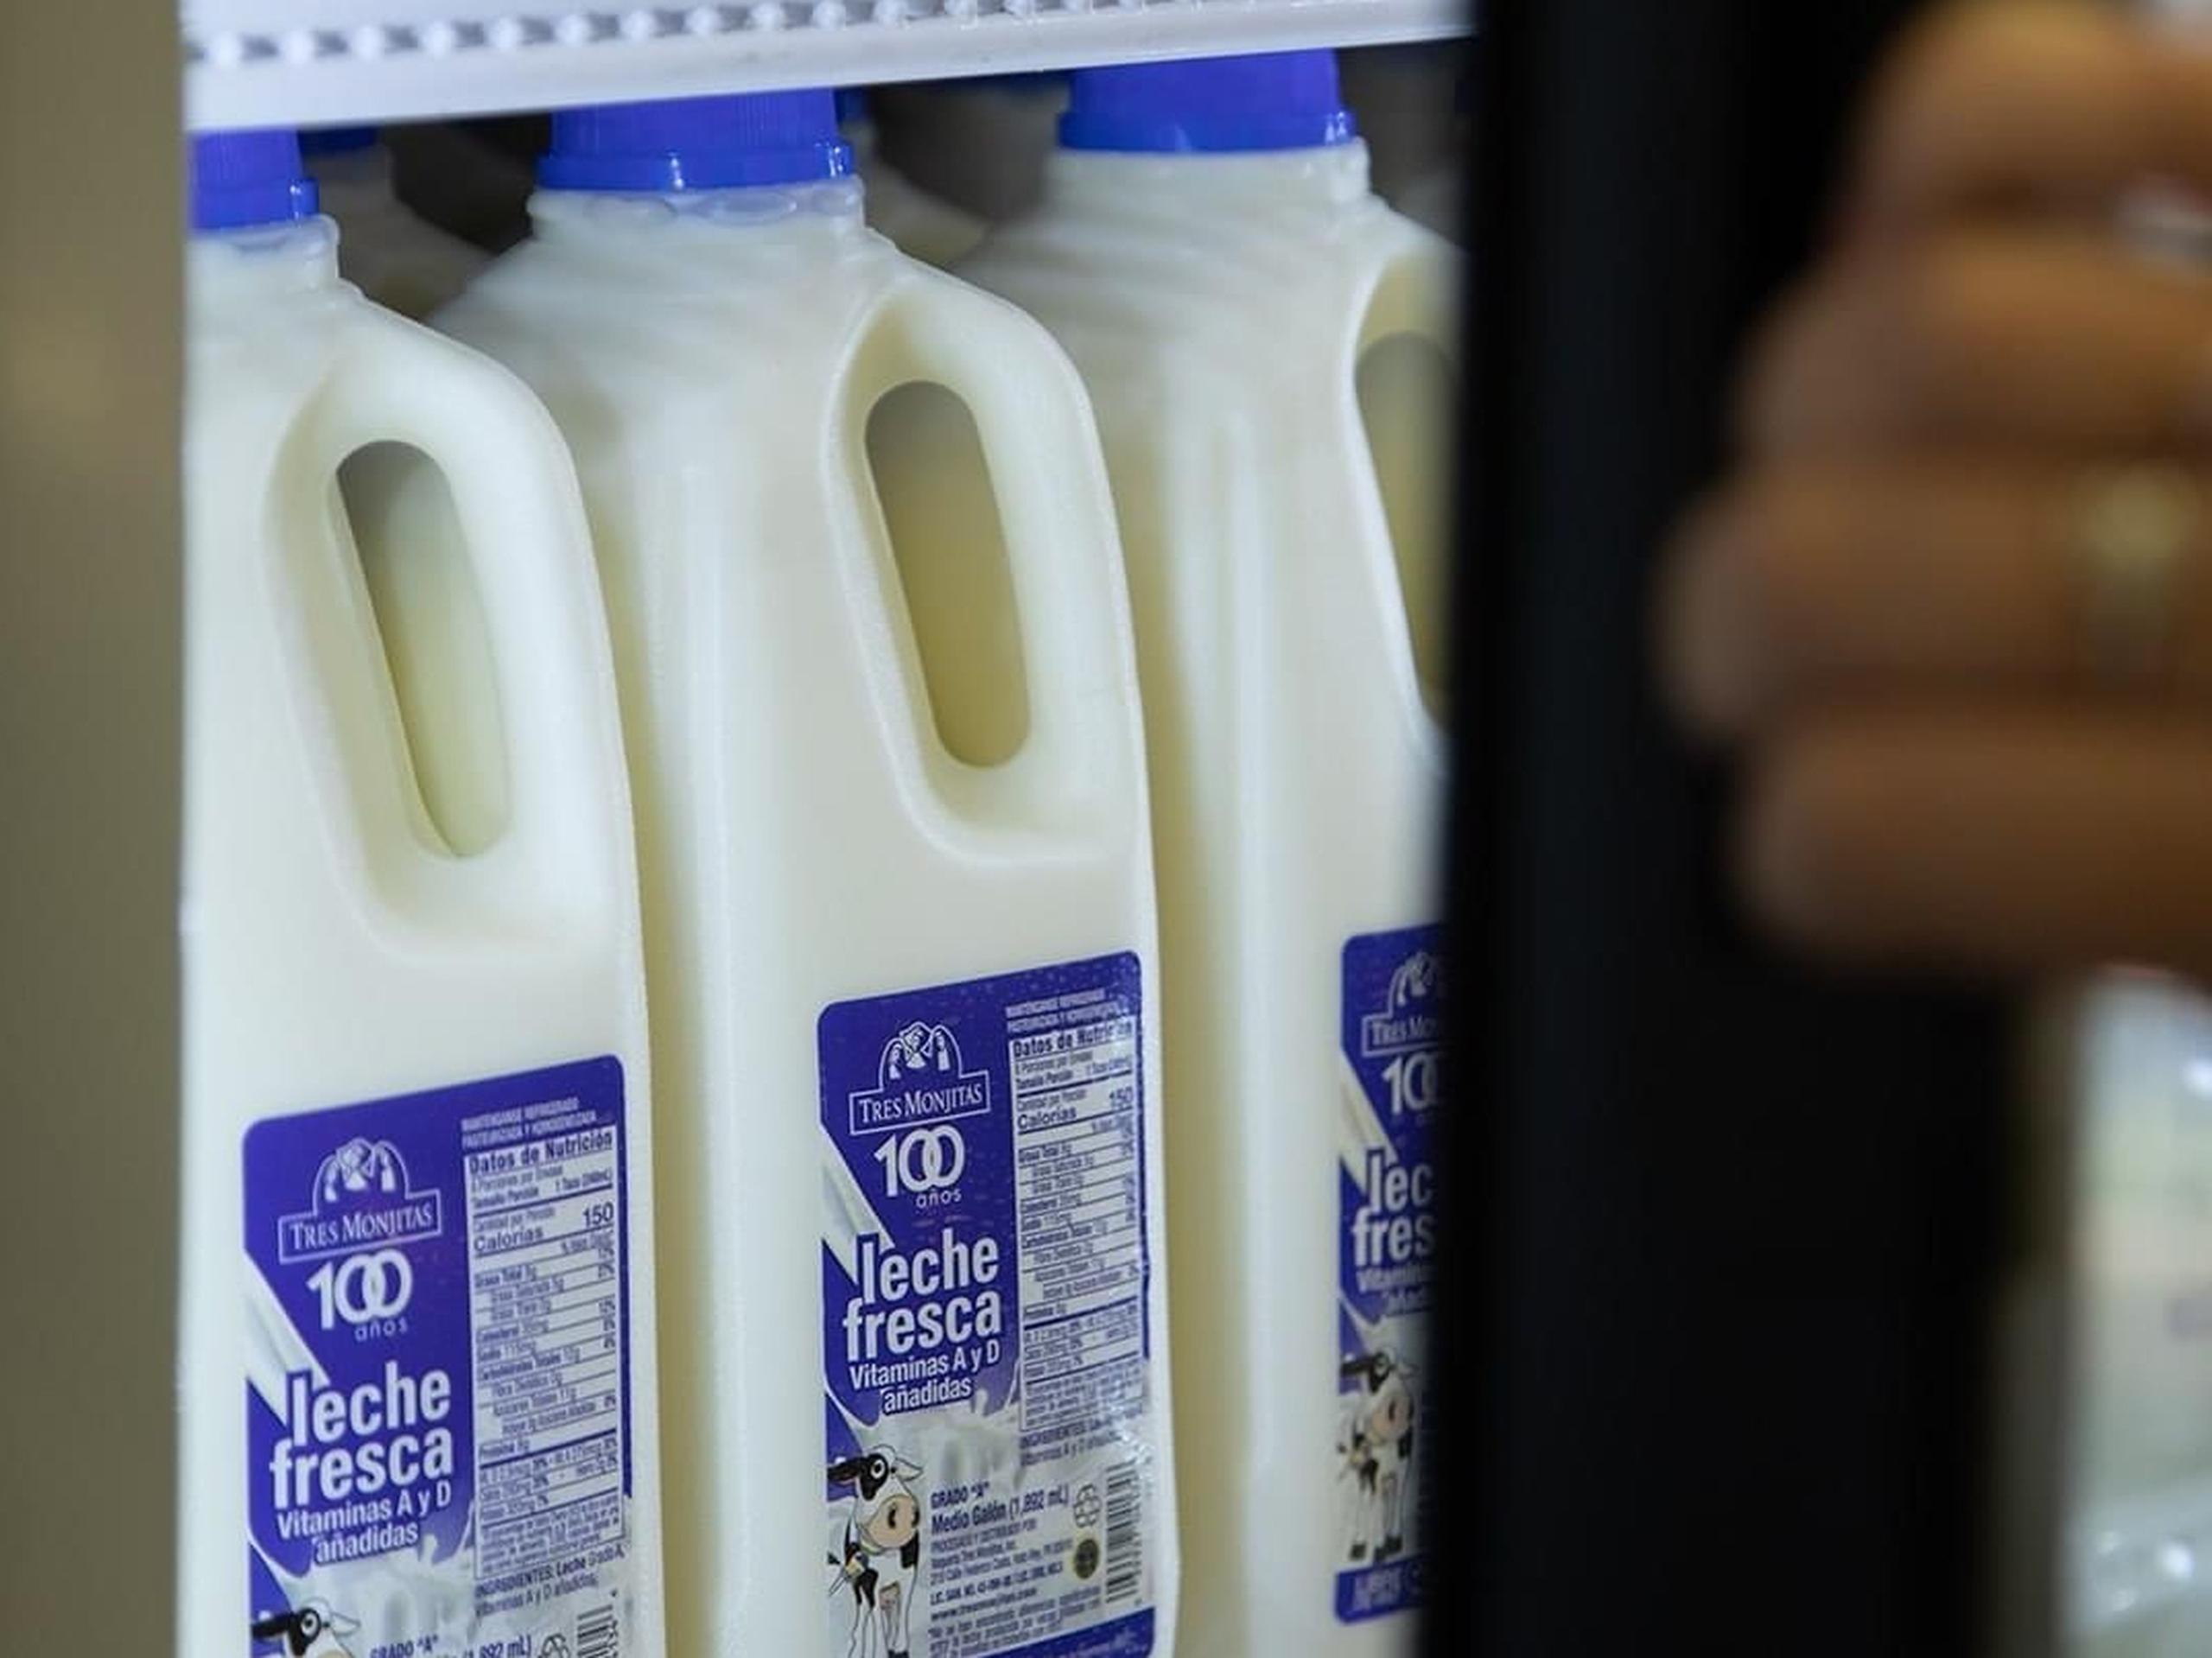 Como todo producto refrigerado, debe asegurarse la cadena de frío en cada una de las etapas de la leche fresca para garantizar su calidad.